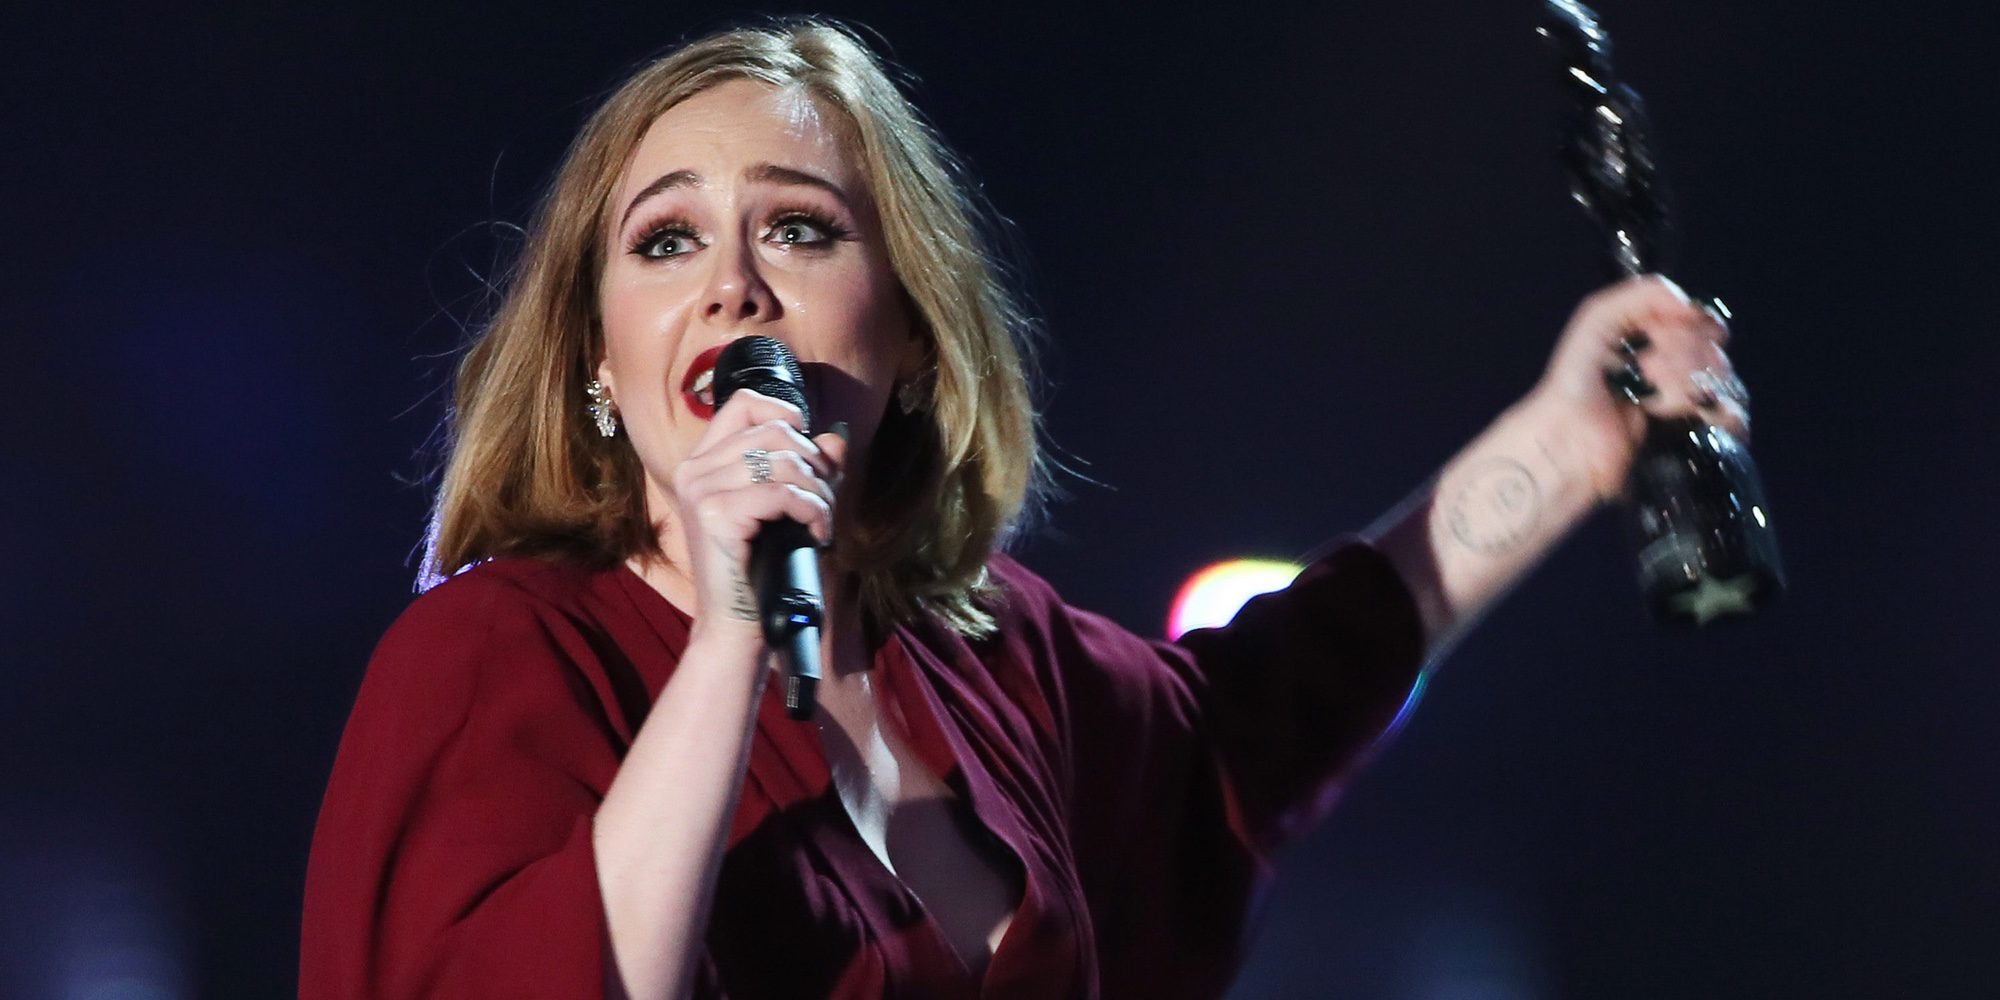 Adele, irreconocible en el vídeo que ha publicado cancelando un concierto por enfermedad